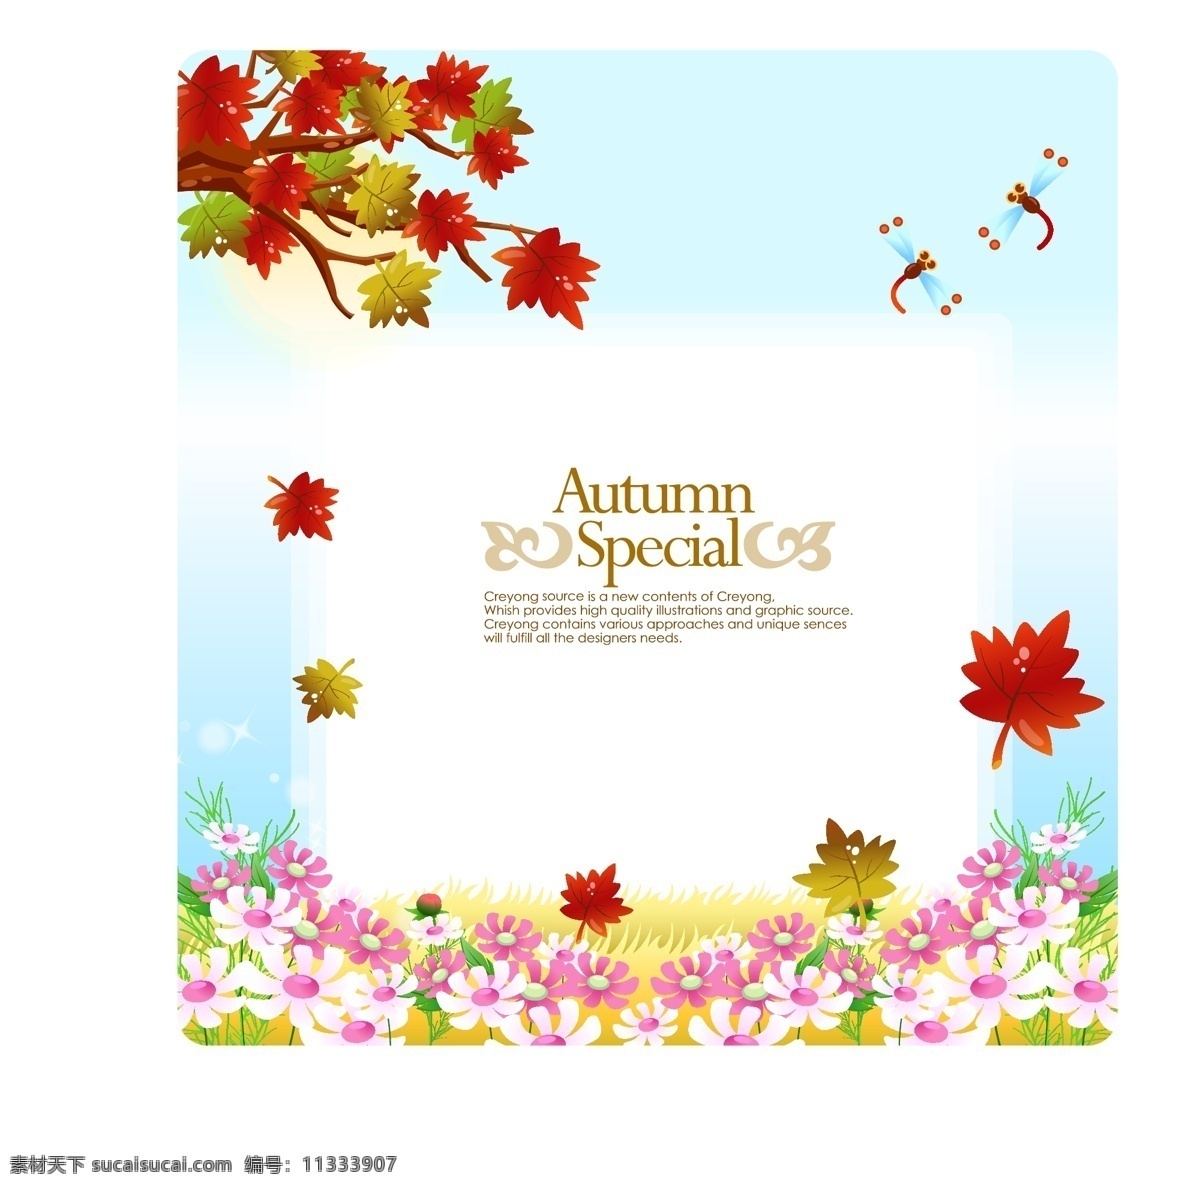 韩国自然风景 秋天风景素材 矢量 格式 ai格式 设计素材 自然风光 风景建筑 矢量图库 白色